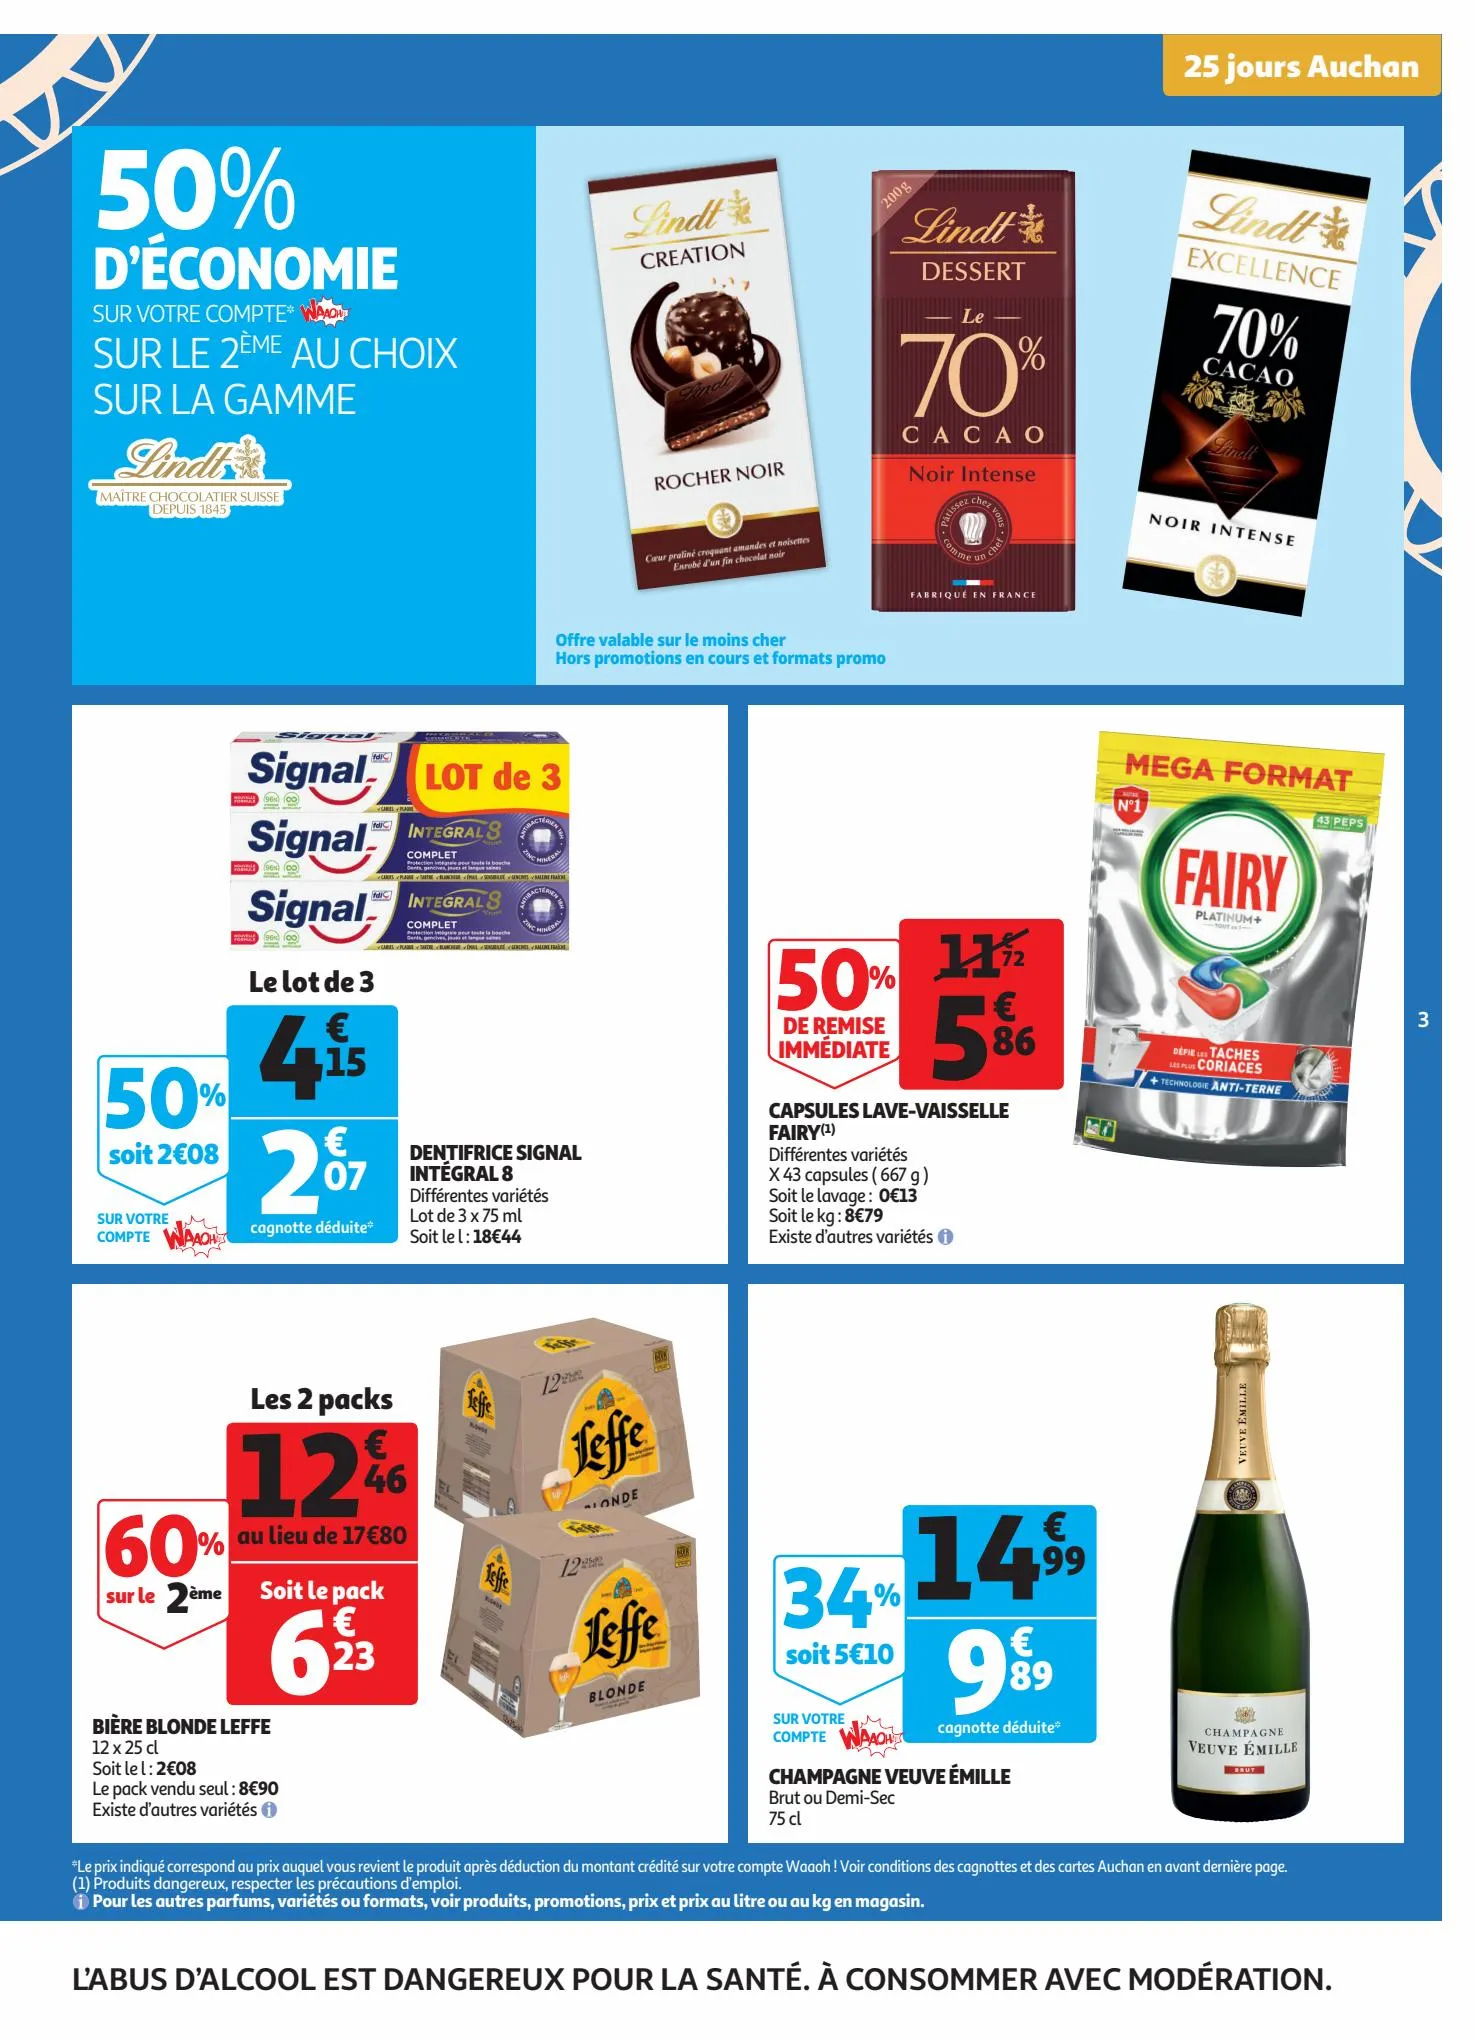 Catalogue 25 jours Auchan, page 00003